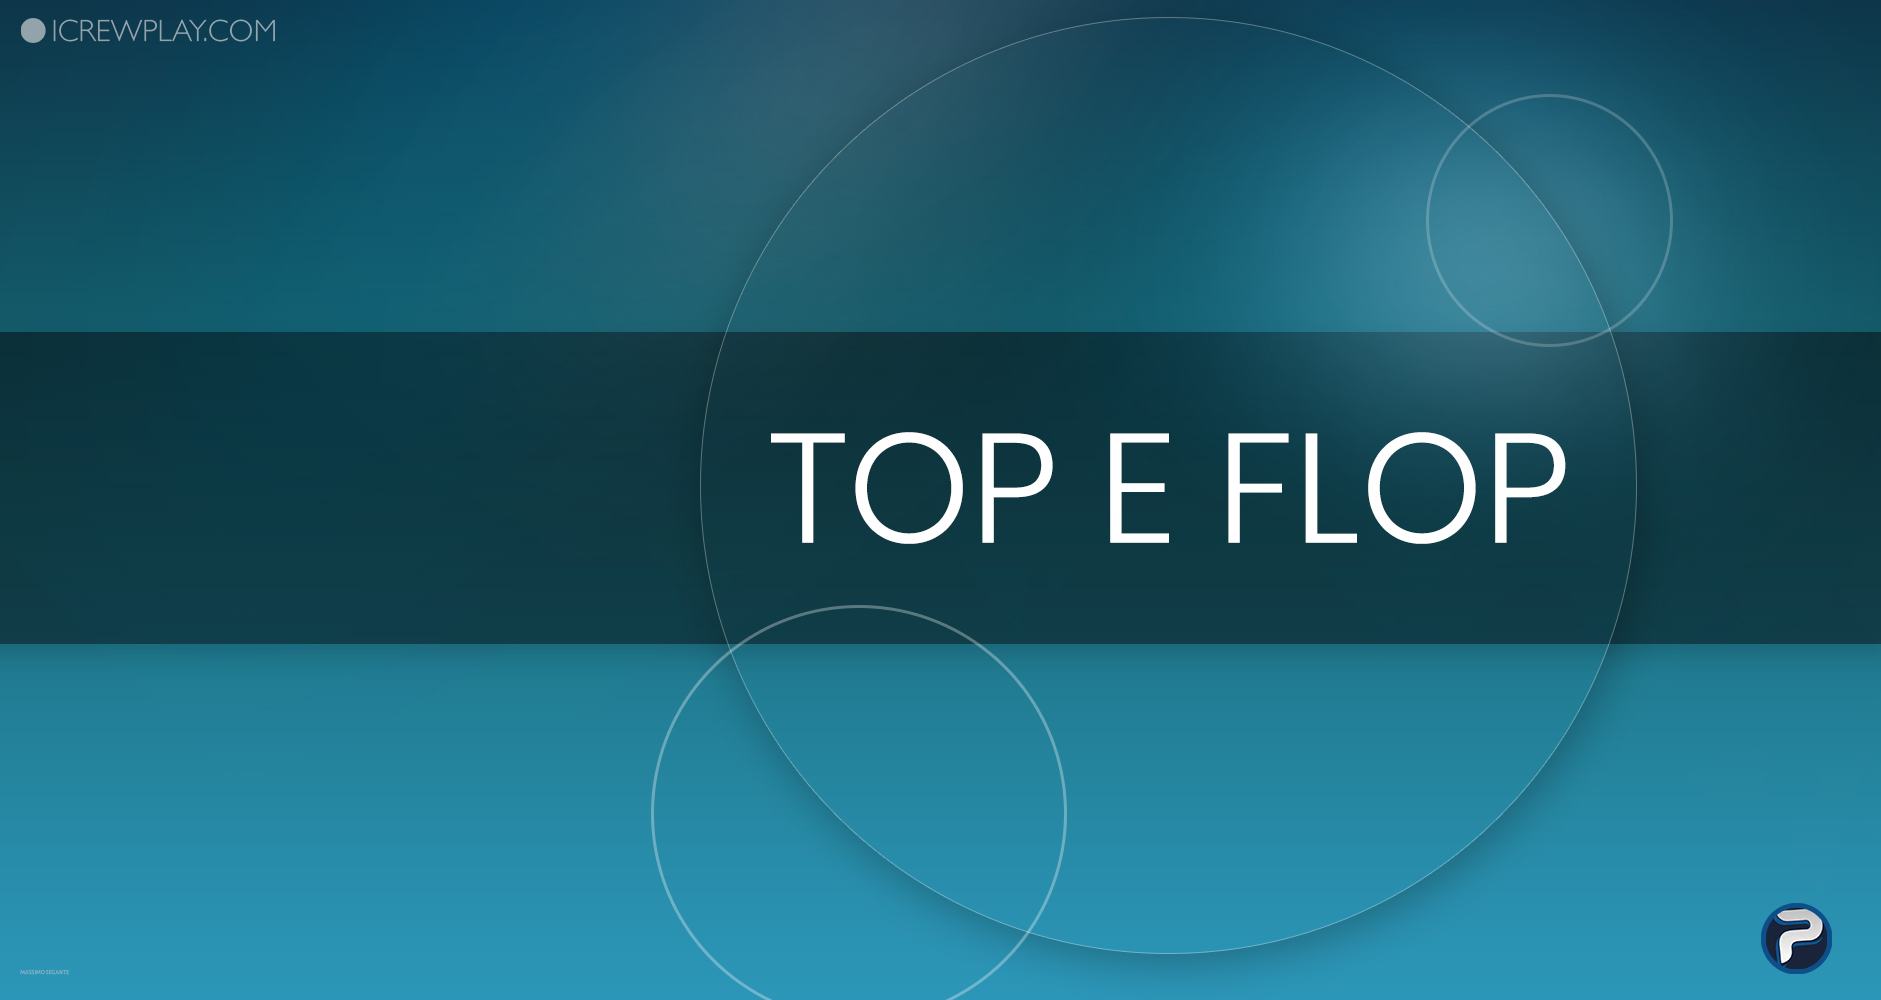 I "top" e i "flop" della settimana videoludica: 16 luglio - 22 luglio 18